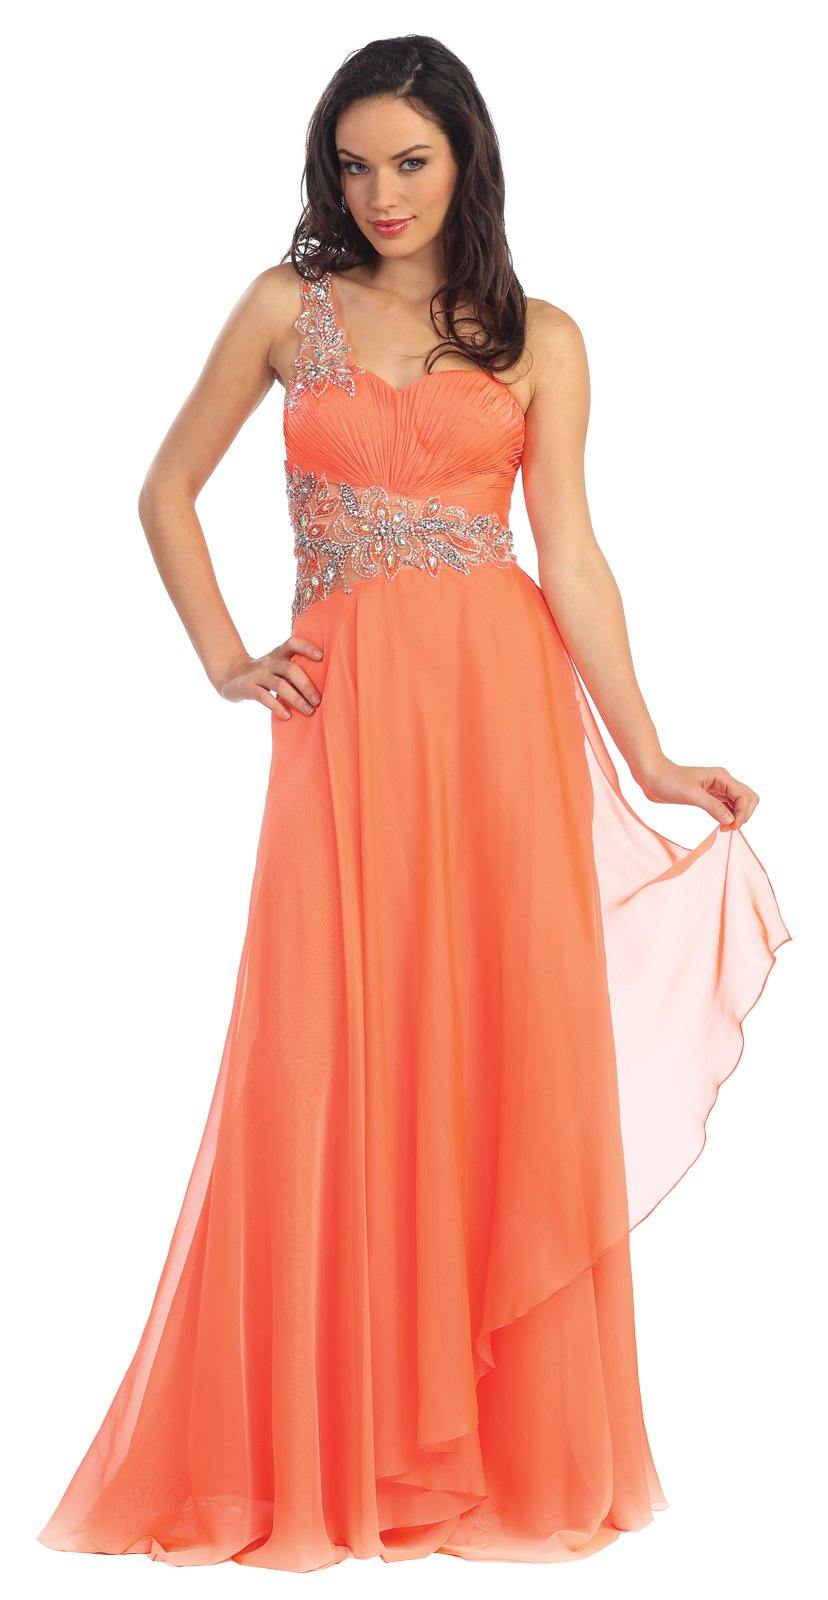 Jewel Embellished Long Prom Dress - The Dress Outlet Elizabeth K